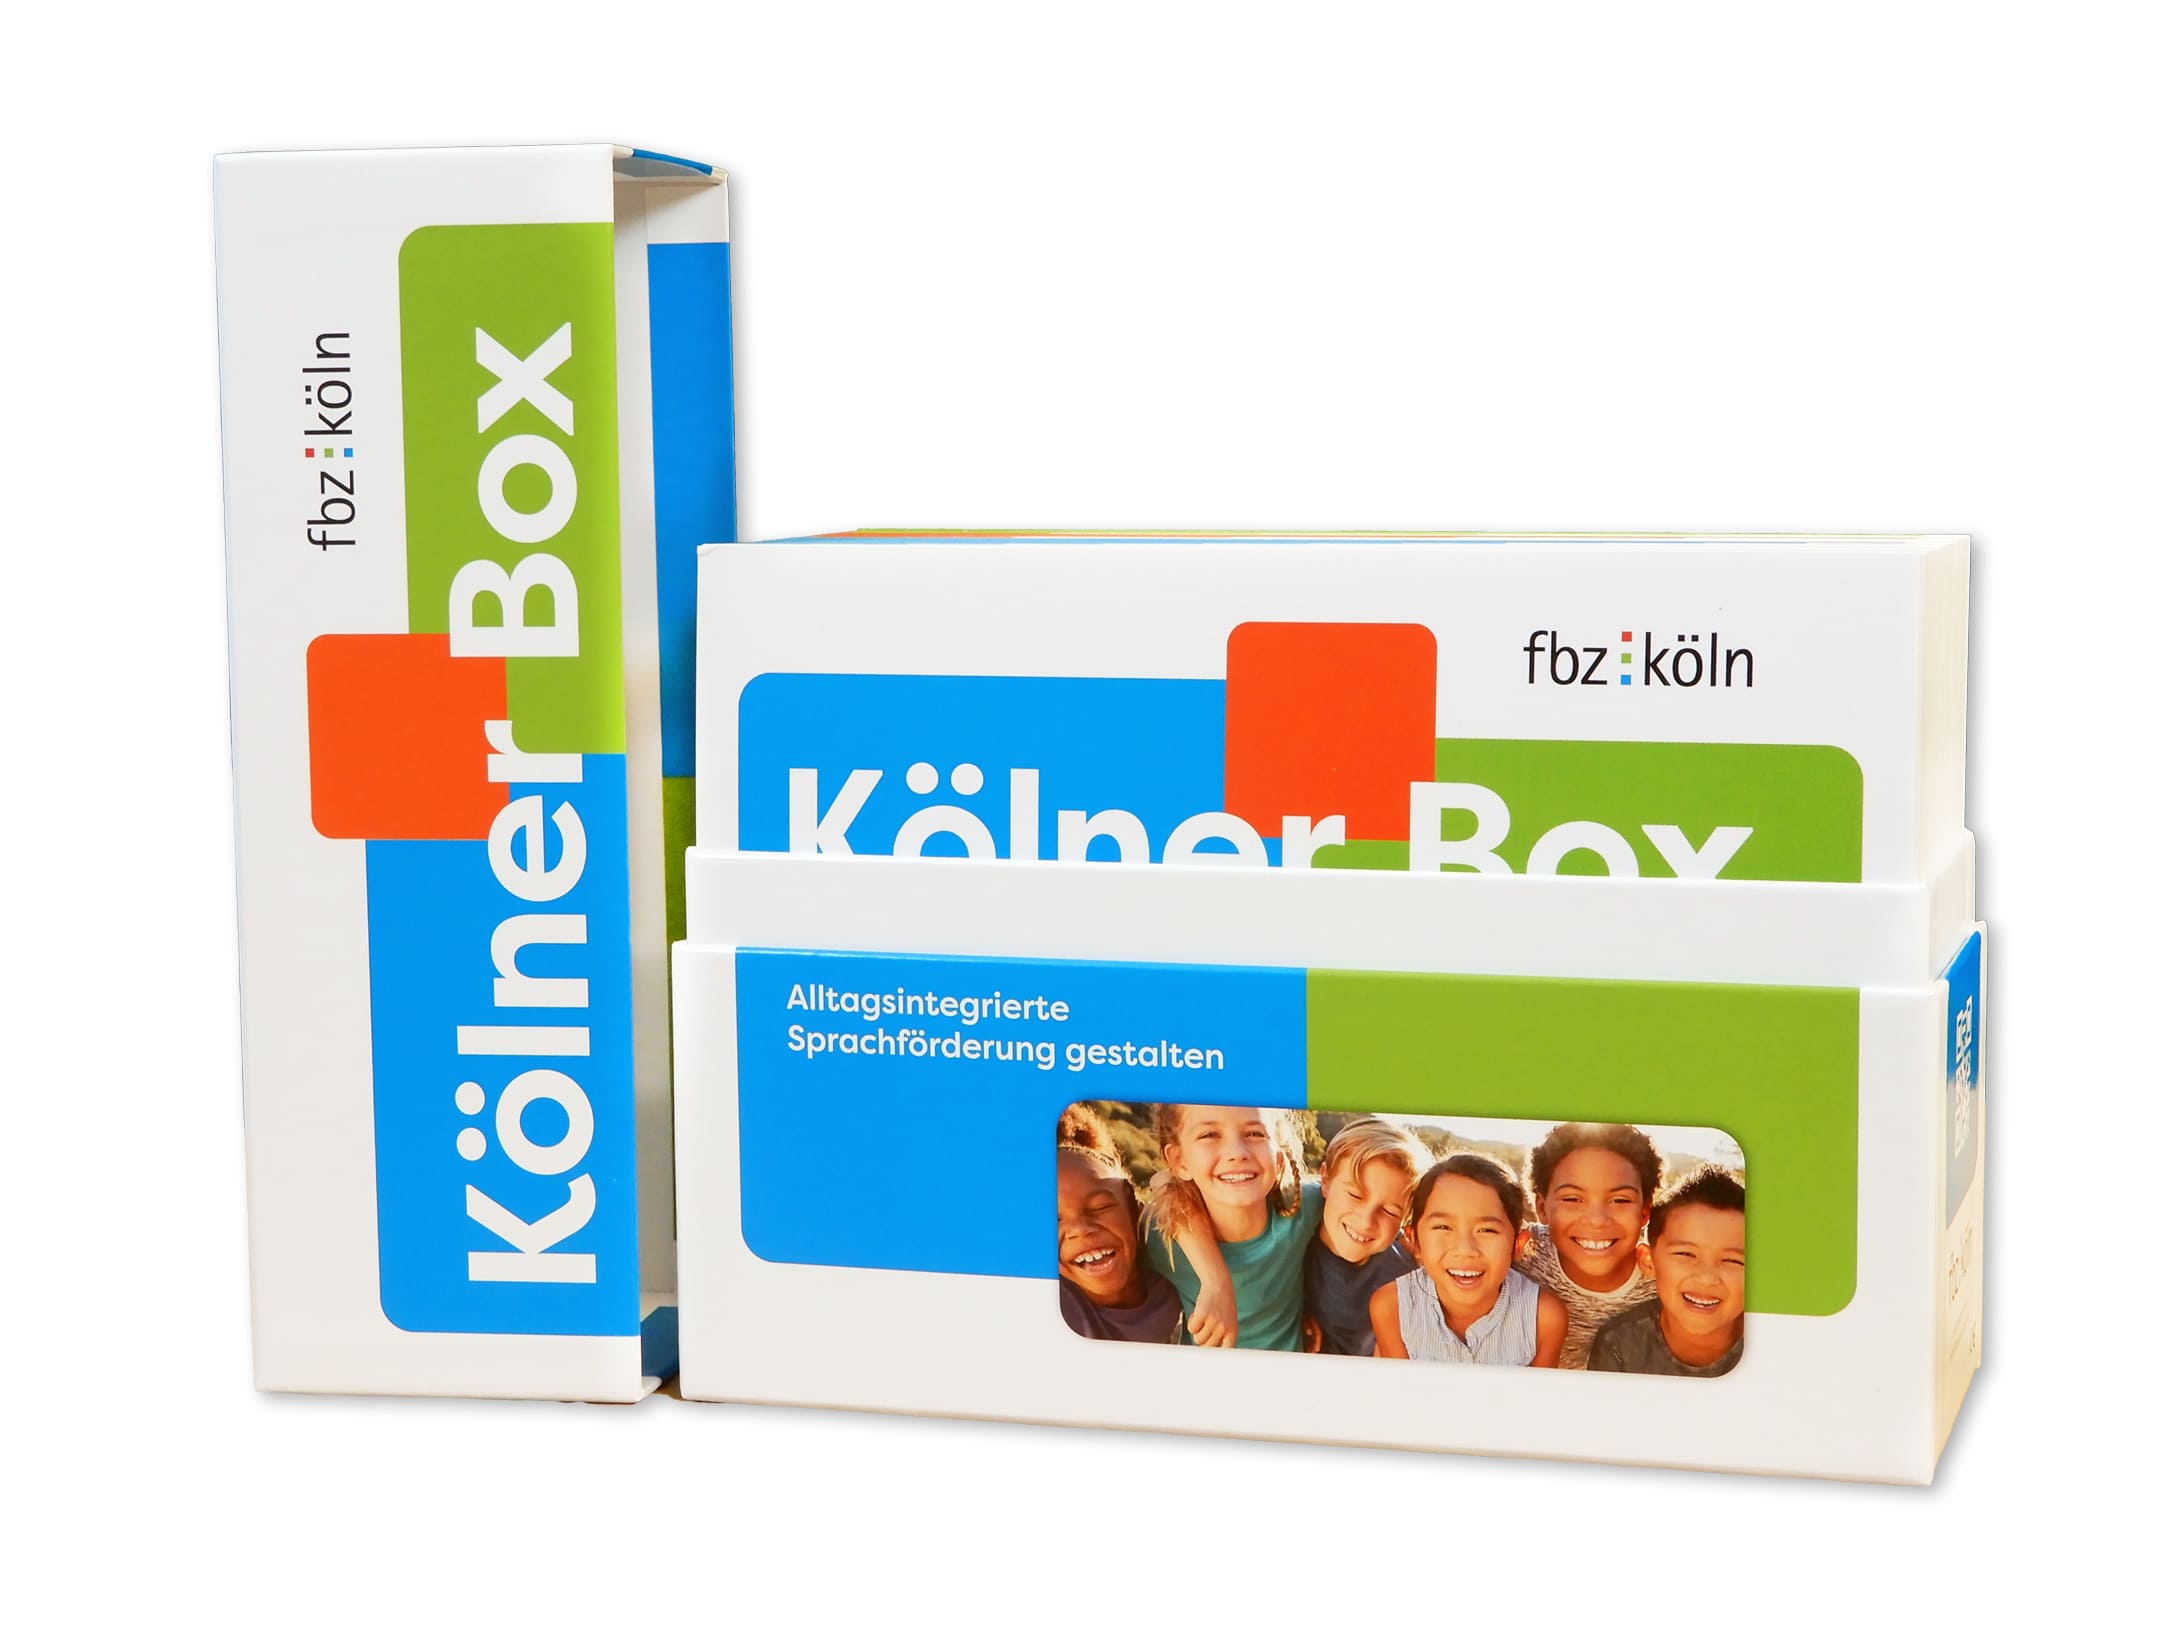 Kölner Box